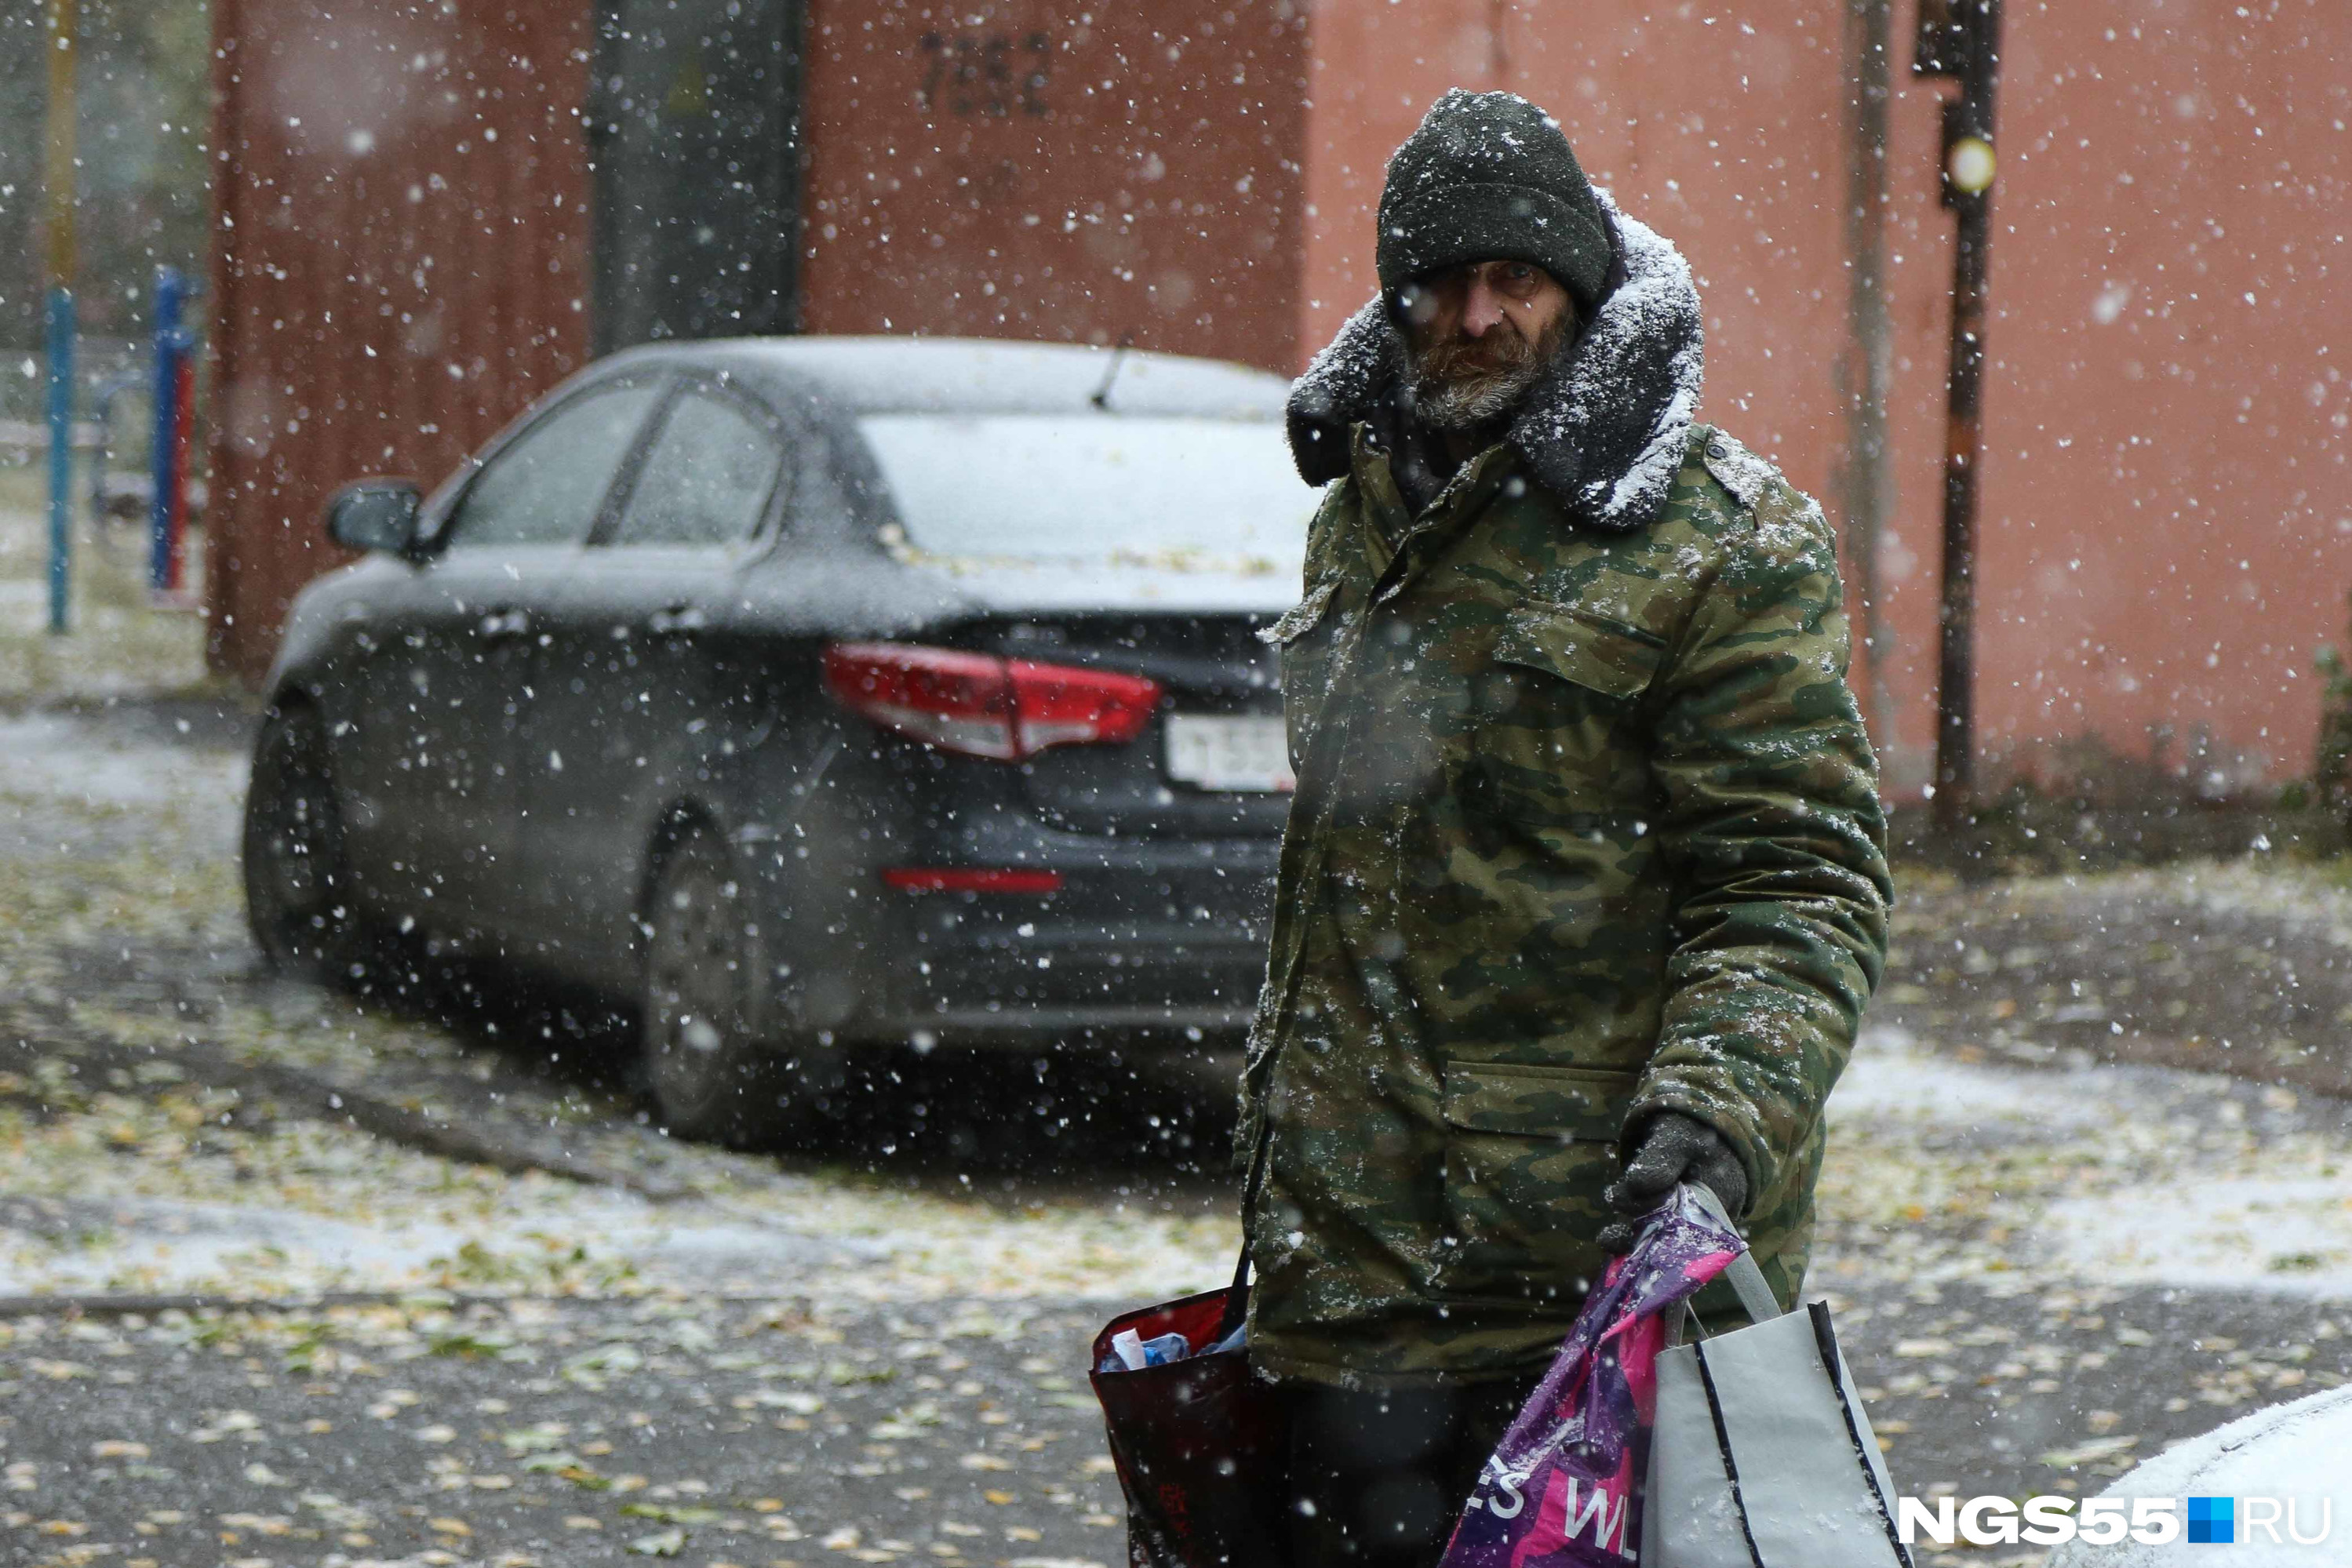 Снег стал для этого мужчины неожиданностью. С нескрываемой тоской он смотрит на непогоду